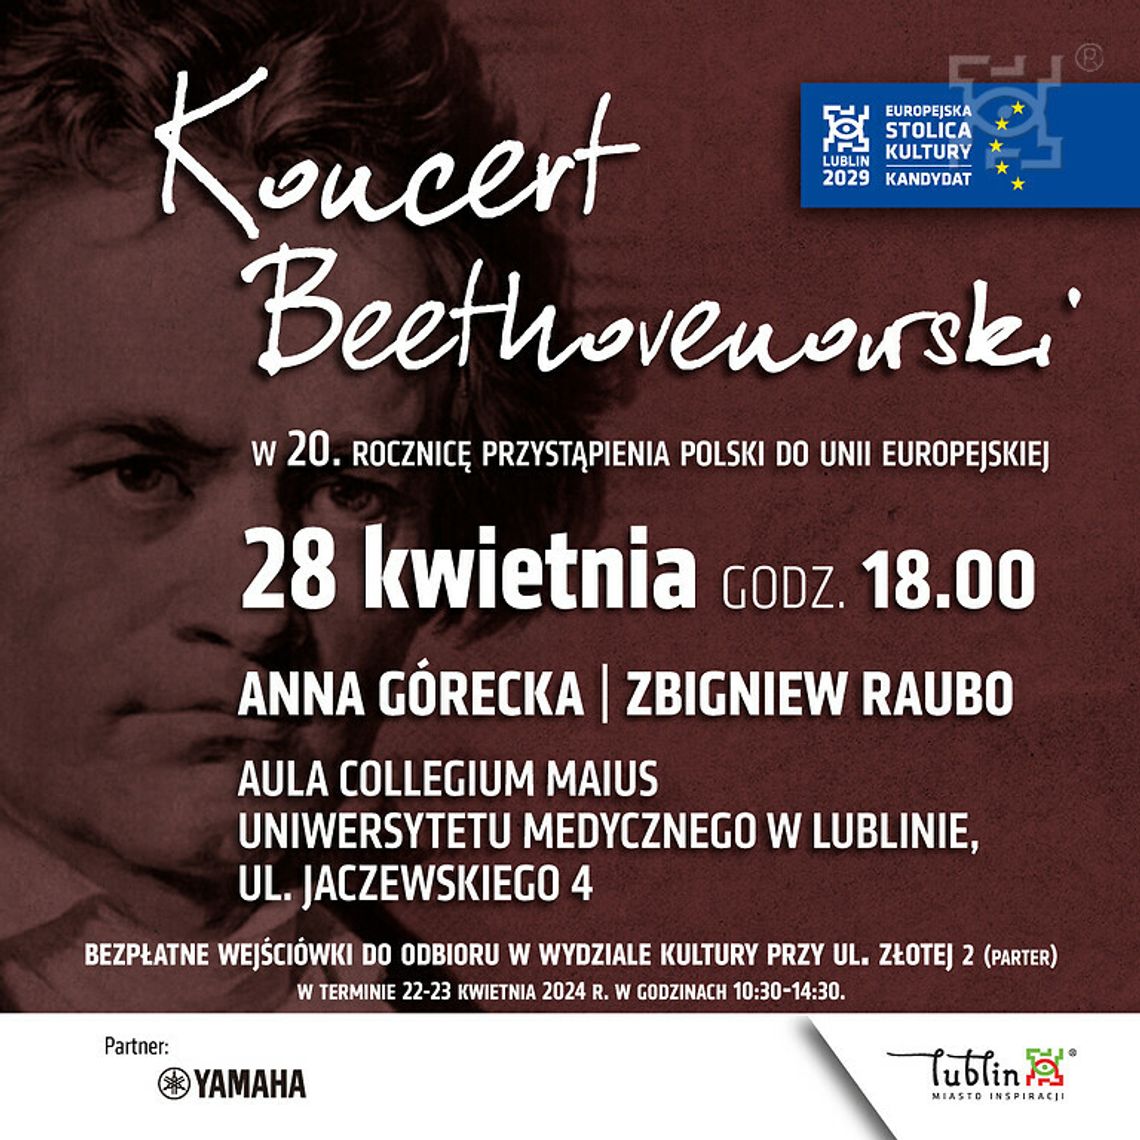 Rocznica 20-lecia przystąpienia Polski do Unii Europejskiej z muzyką Beethovena